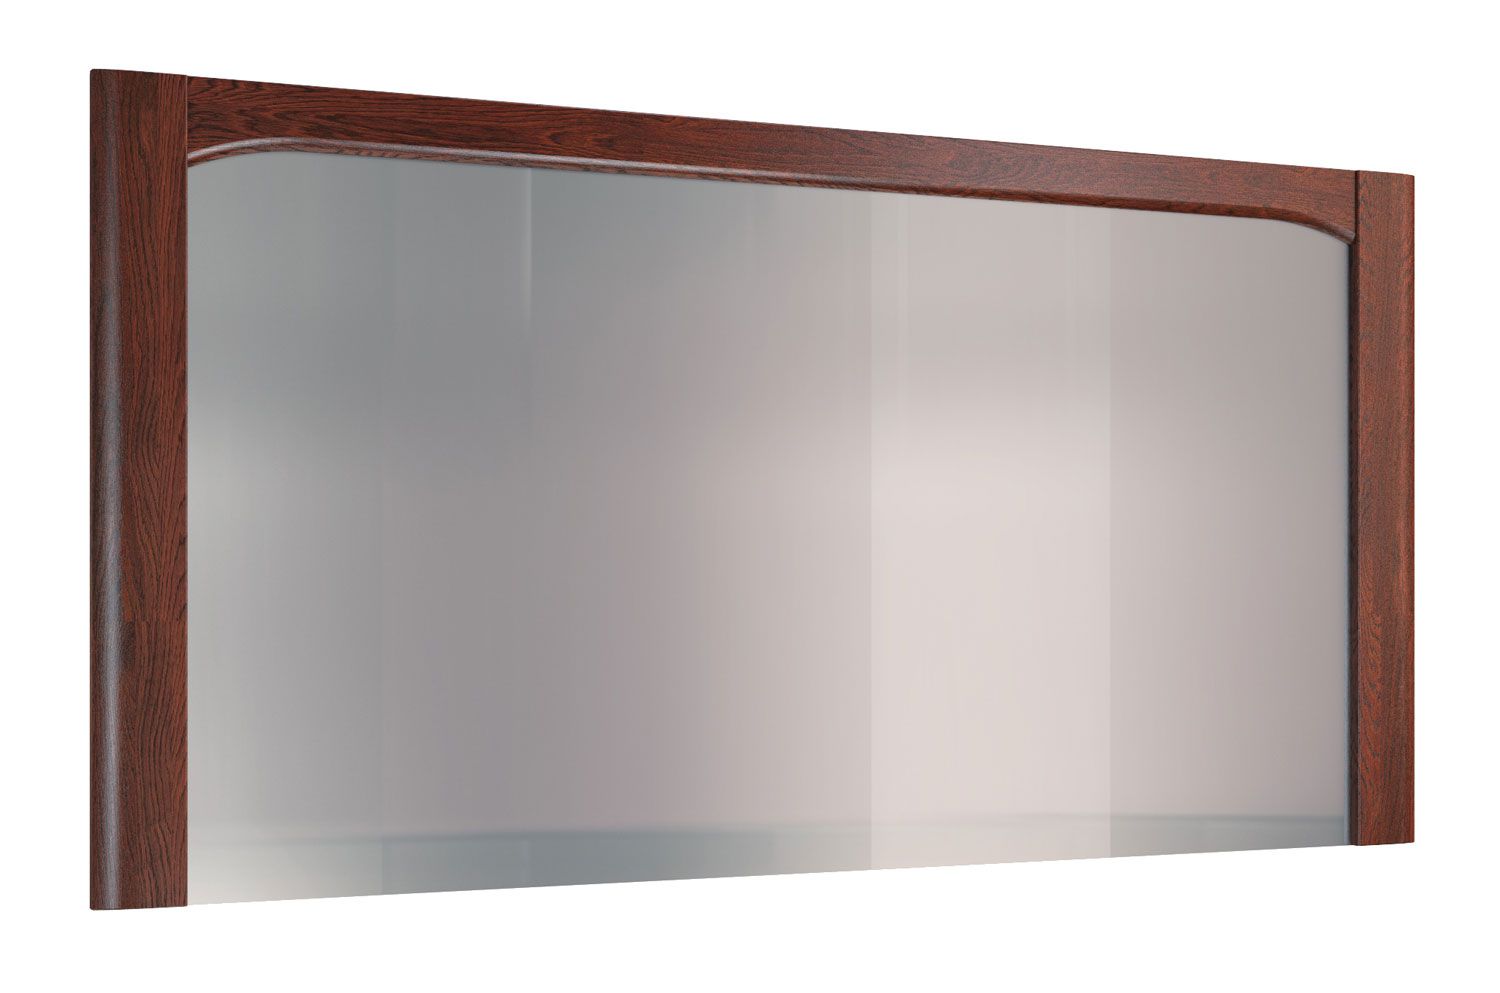 Specchio classico Krasno 21, in rovere massiccio, lavorazione di alta qualità, dimensioni: 96 x 175 x 4 cm, design neutro